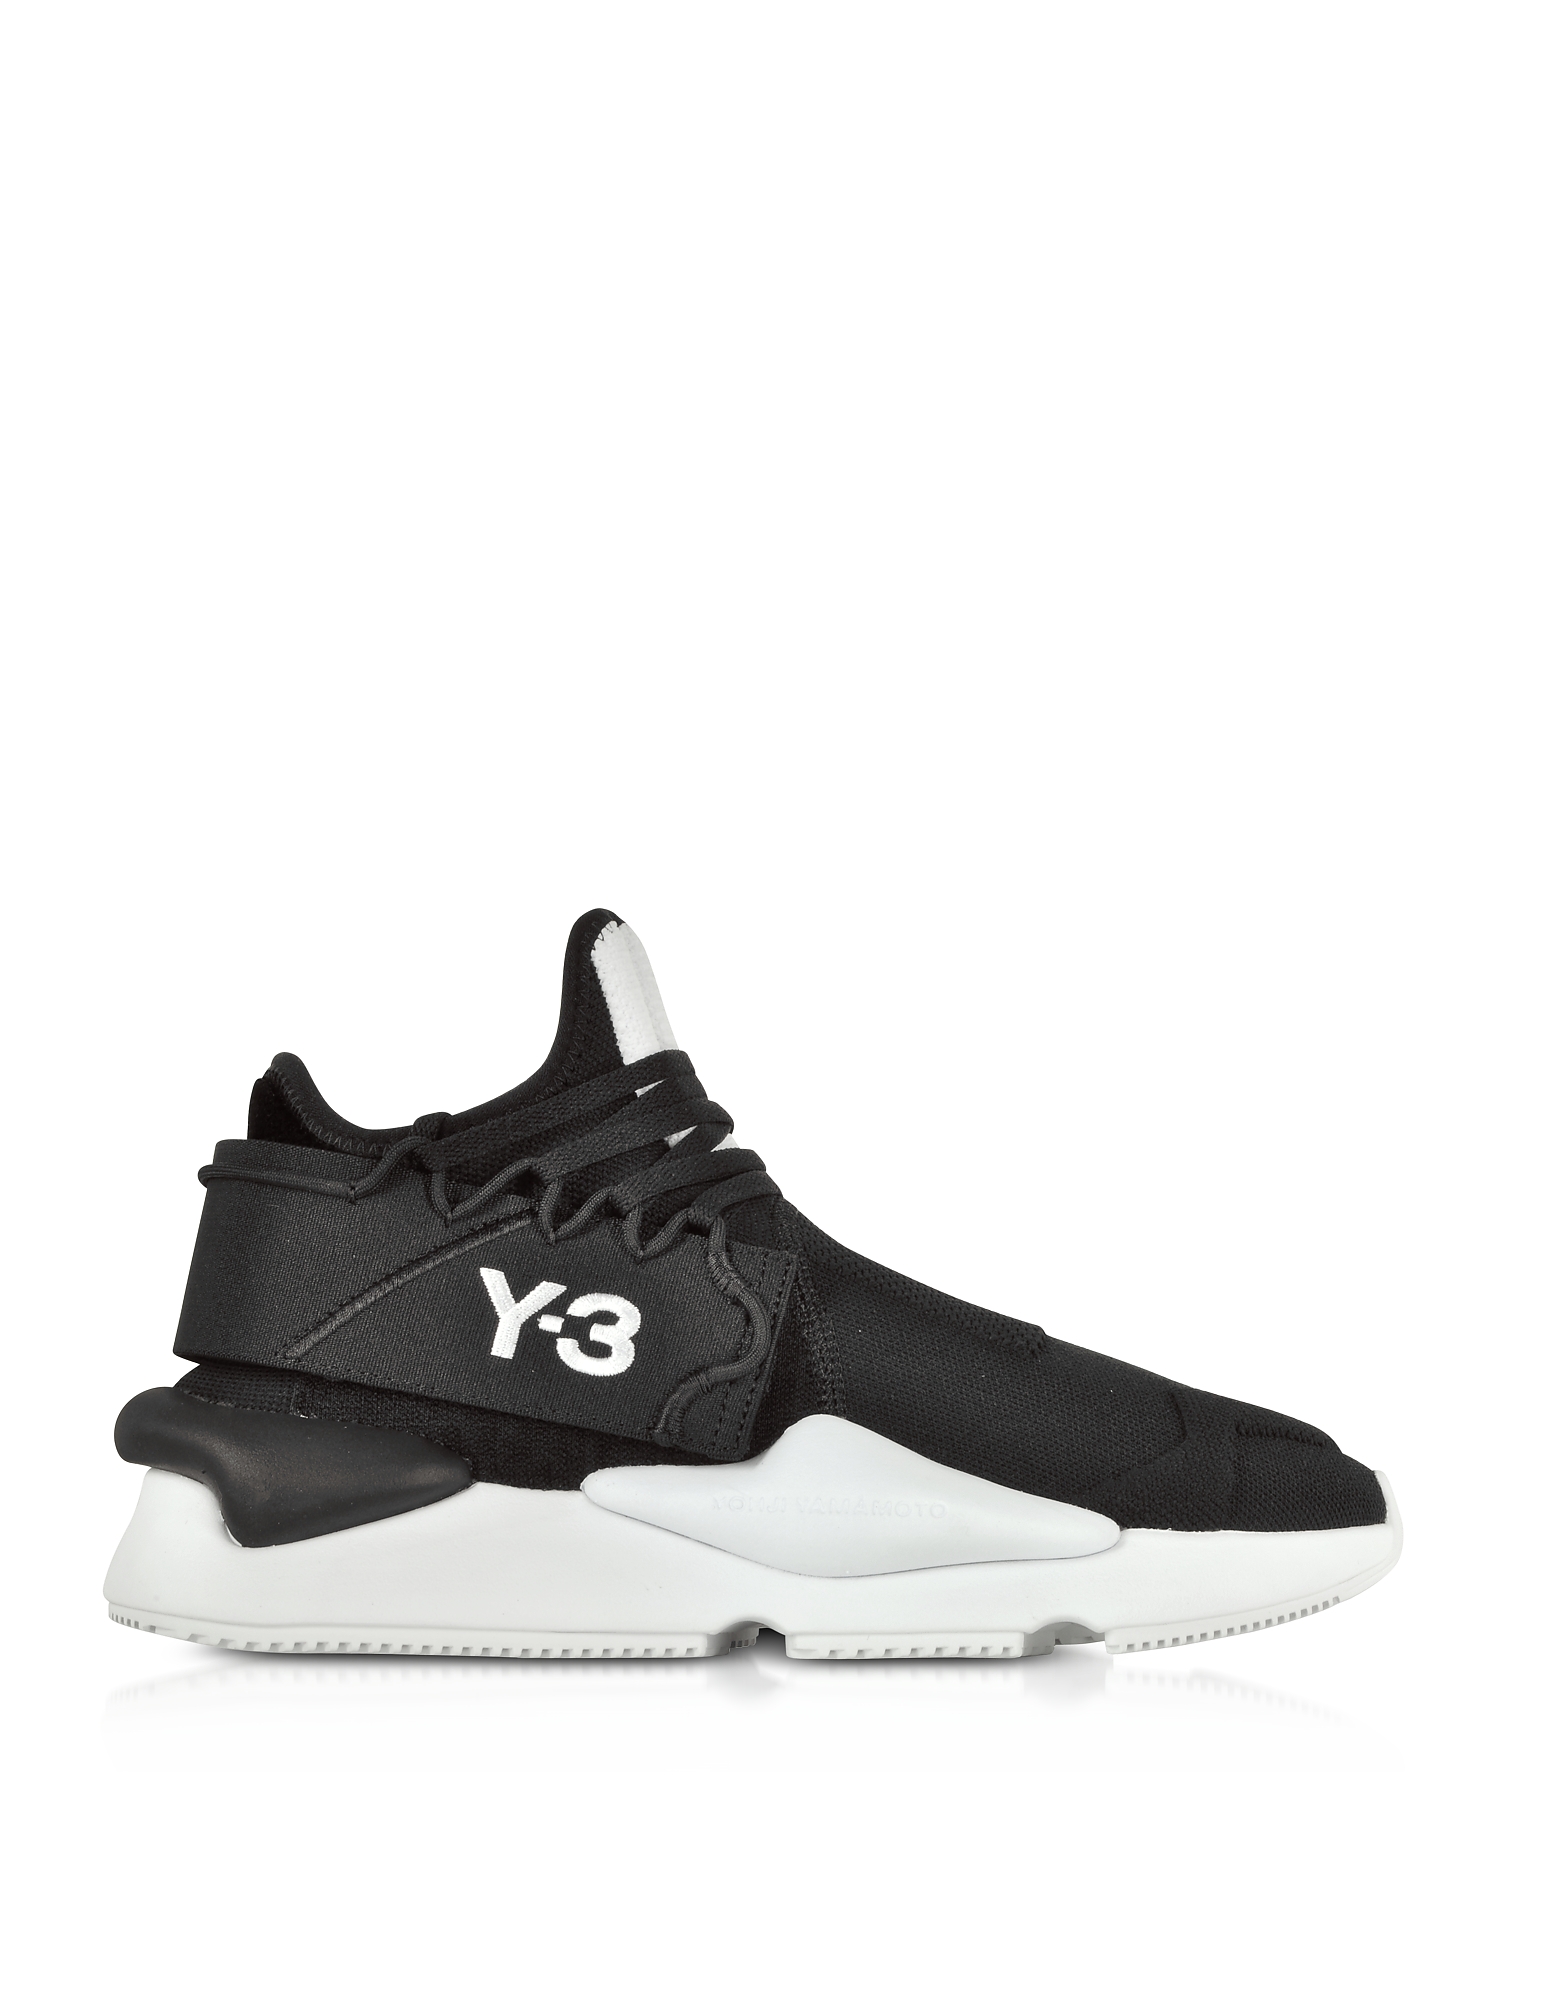 

Y-3 Kaiwa Knit Black Nylon Men's Sneakers